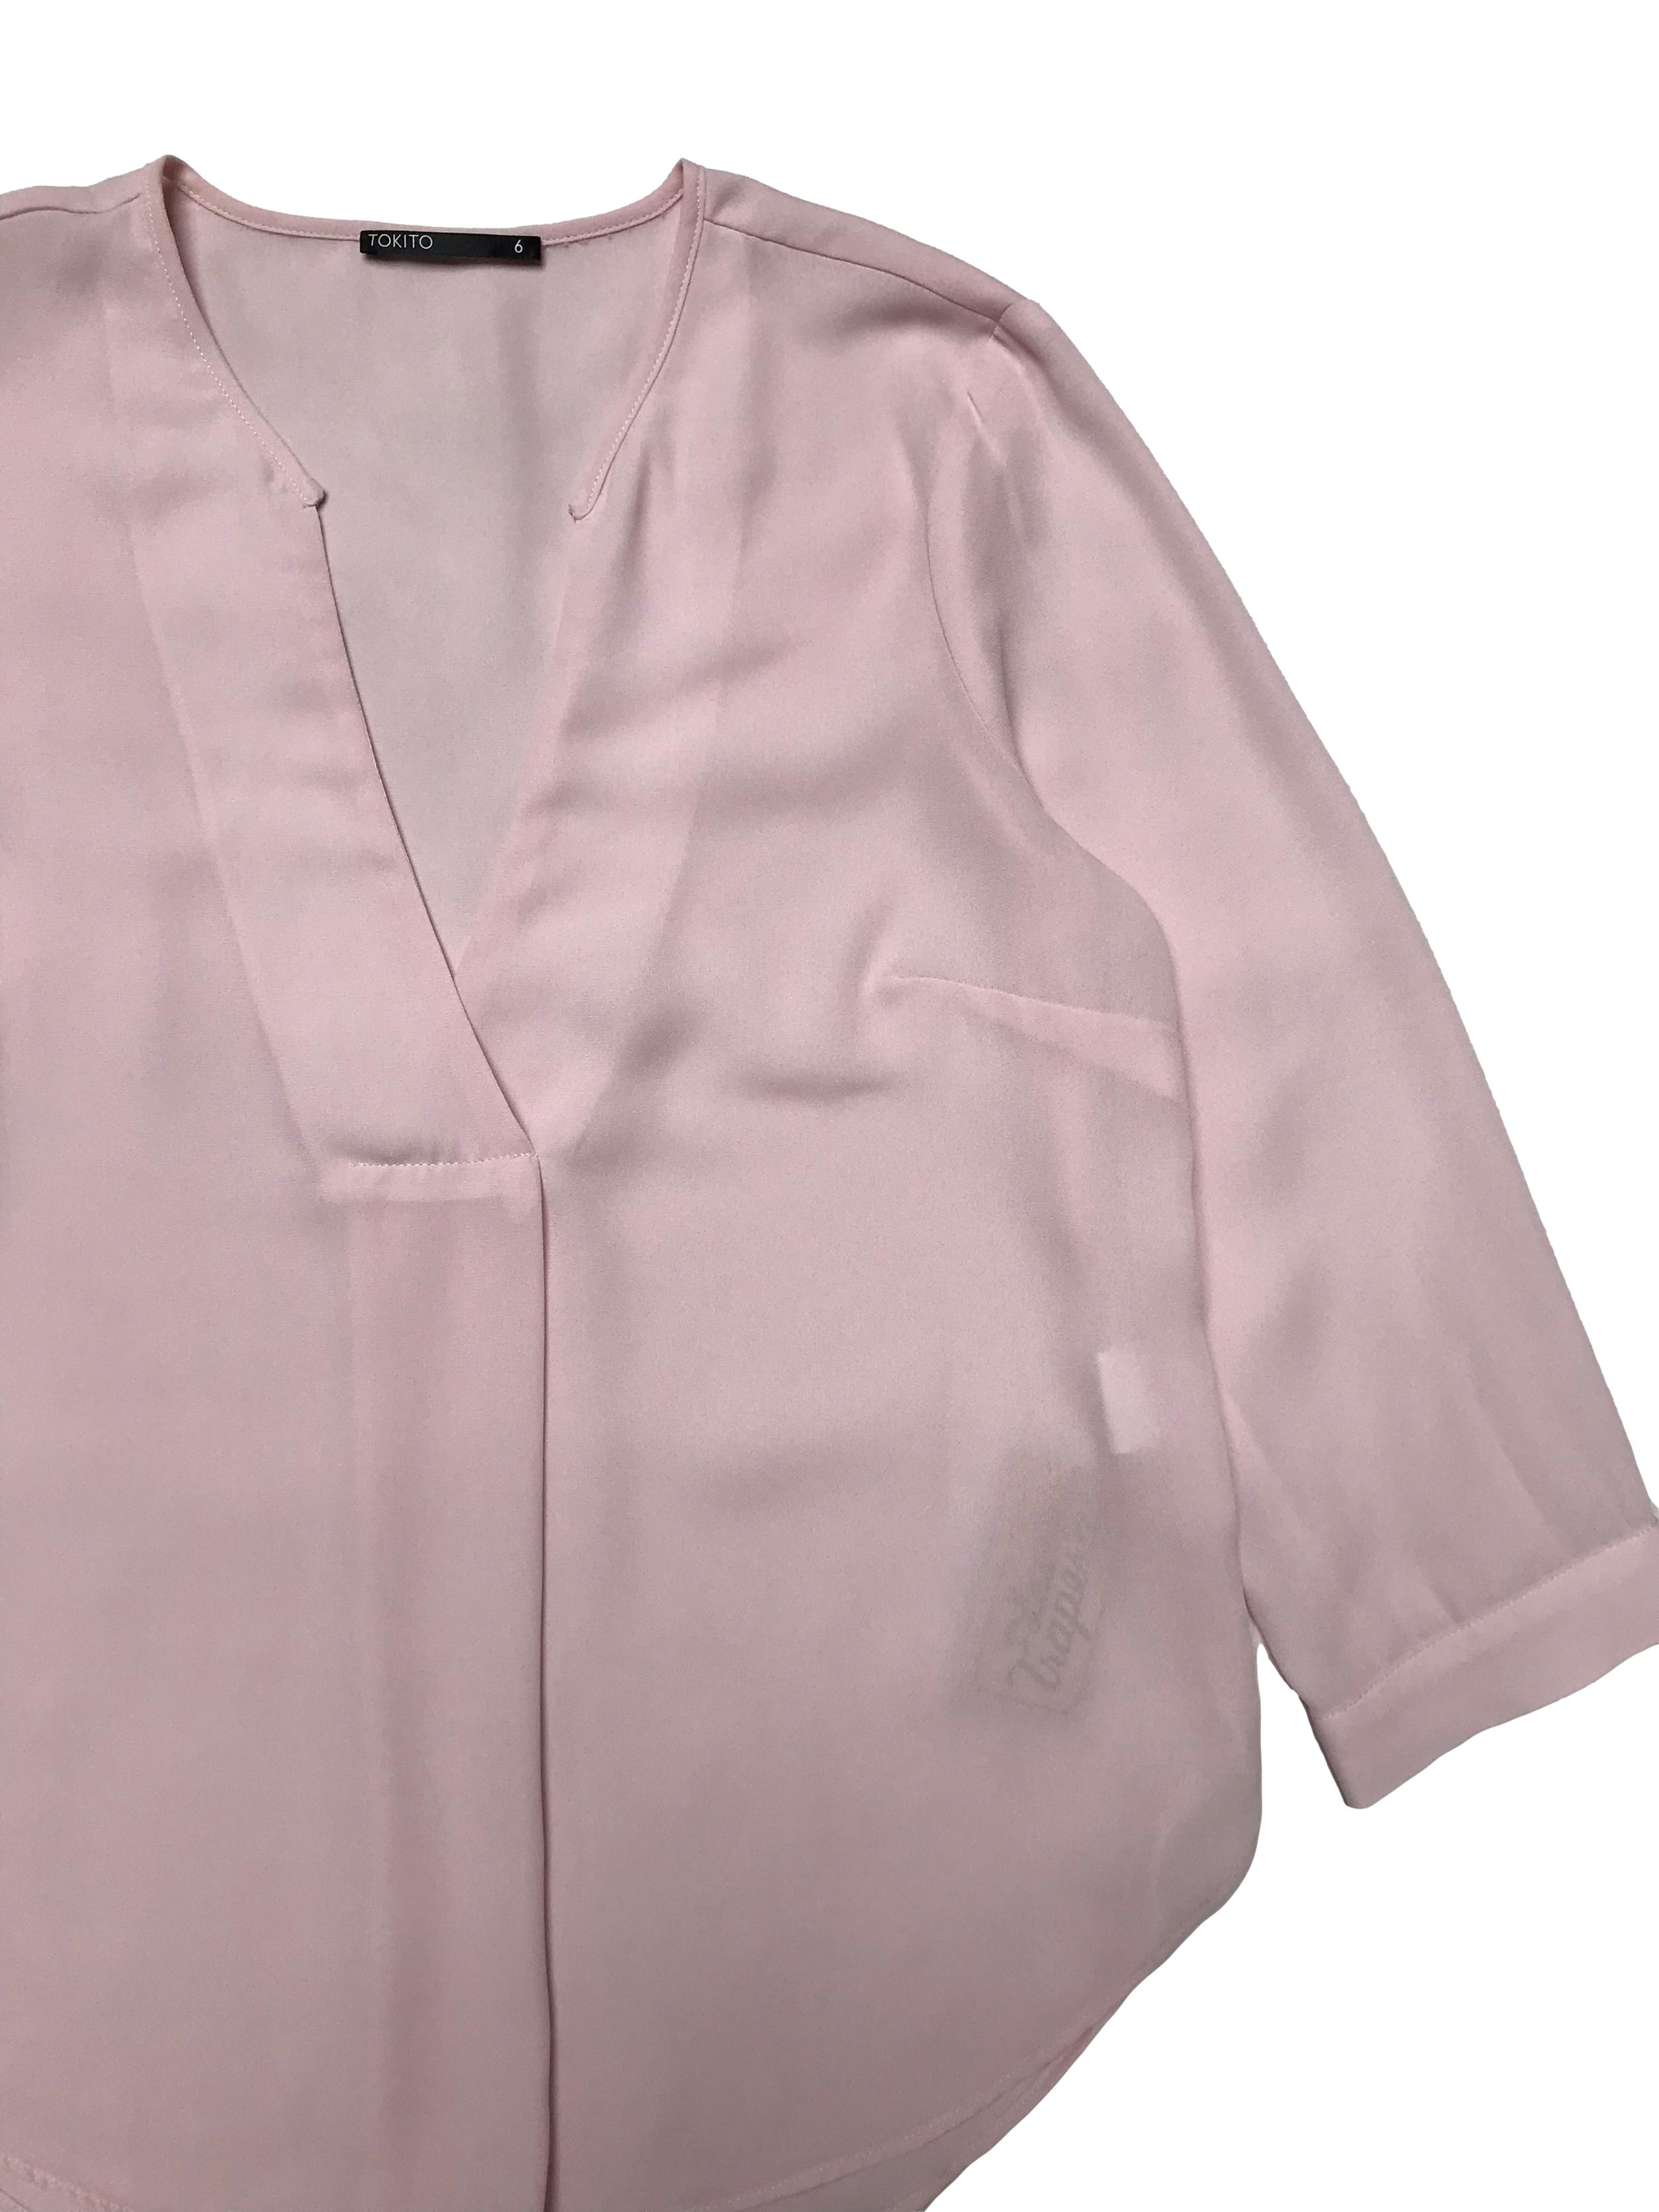 Blusa de gasa rosa, escote en V con pliegue, manga 3/4 con botón, corte recto. Busto 92cm Largo 60cm